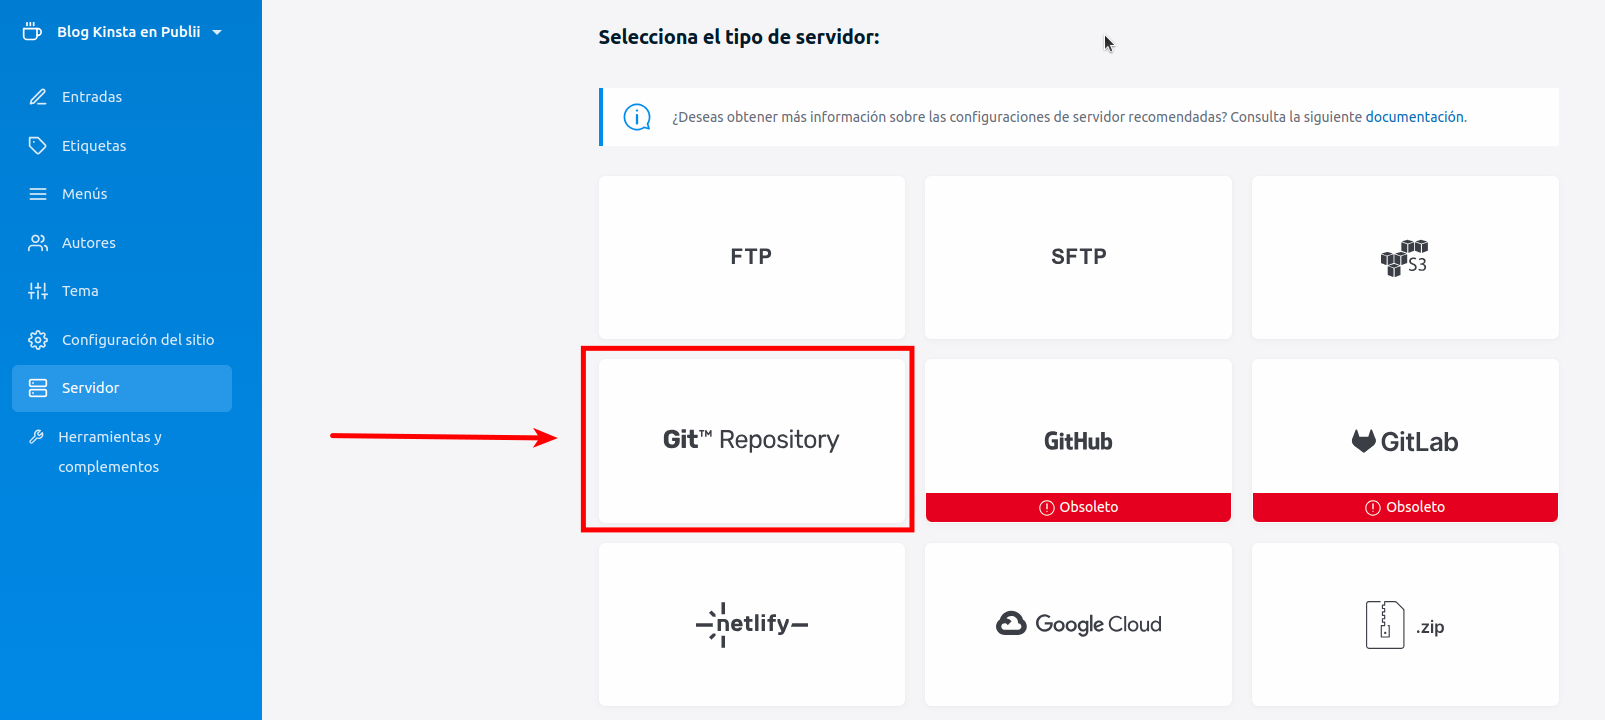 Captura de pantalla de la configuración del Servidor en Publii con la opción Git Repository remarcada